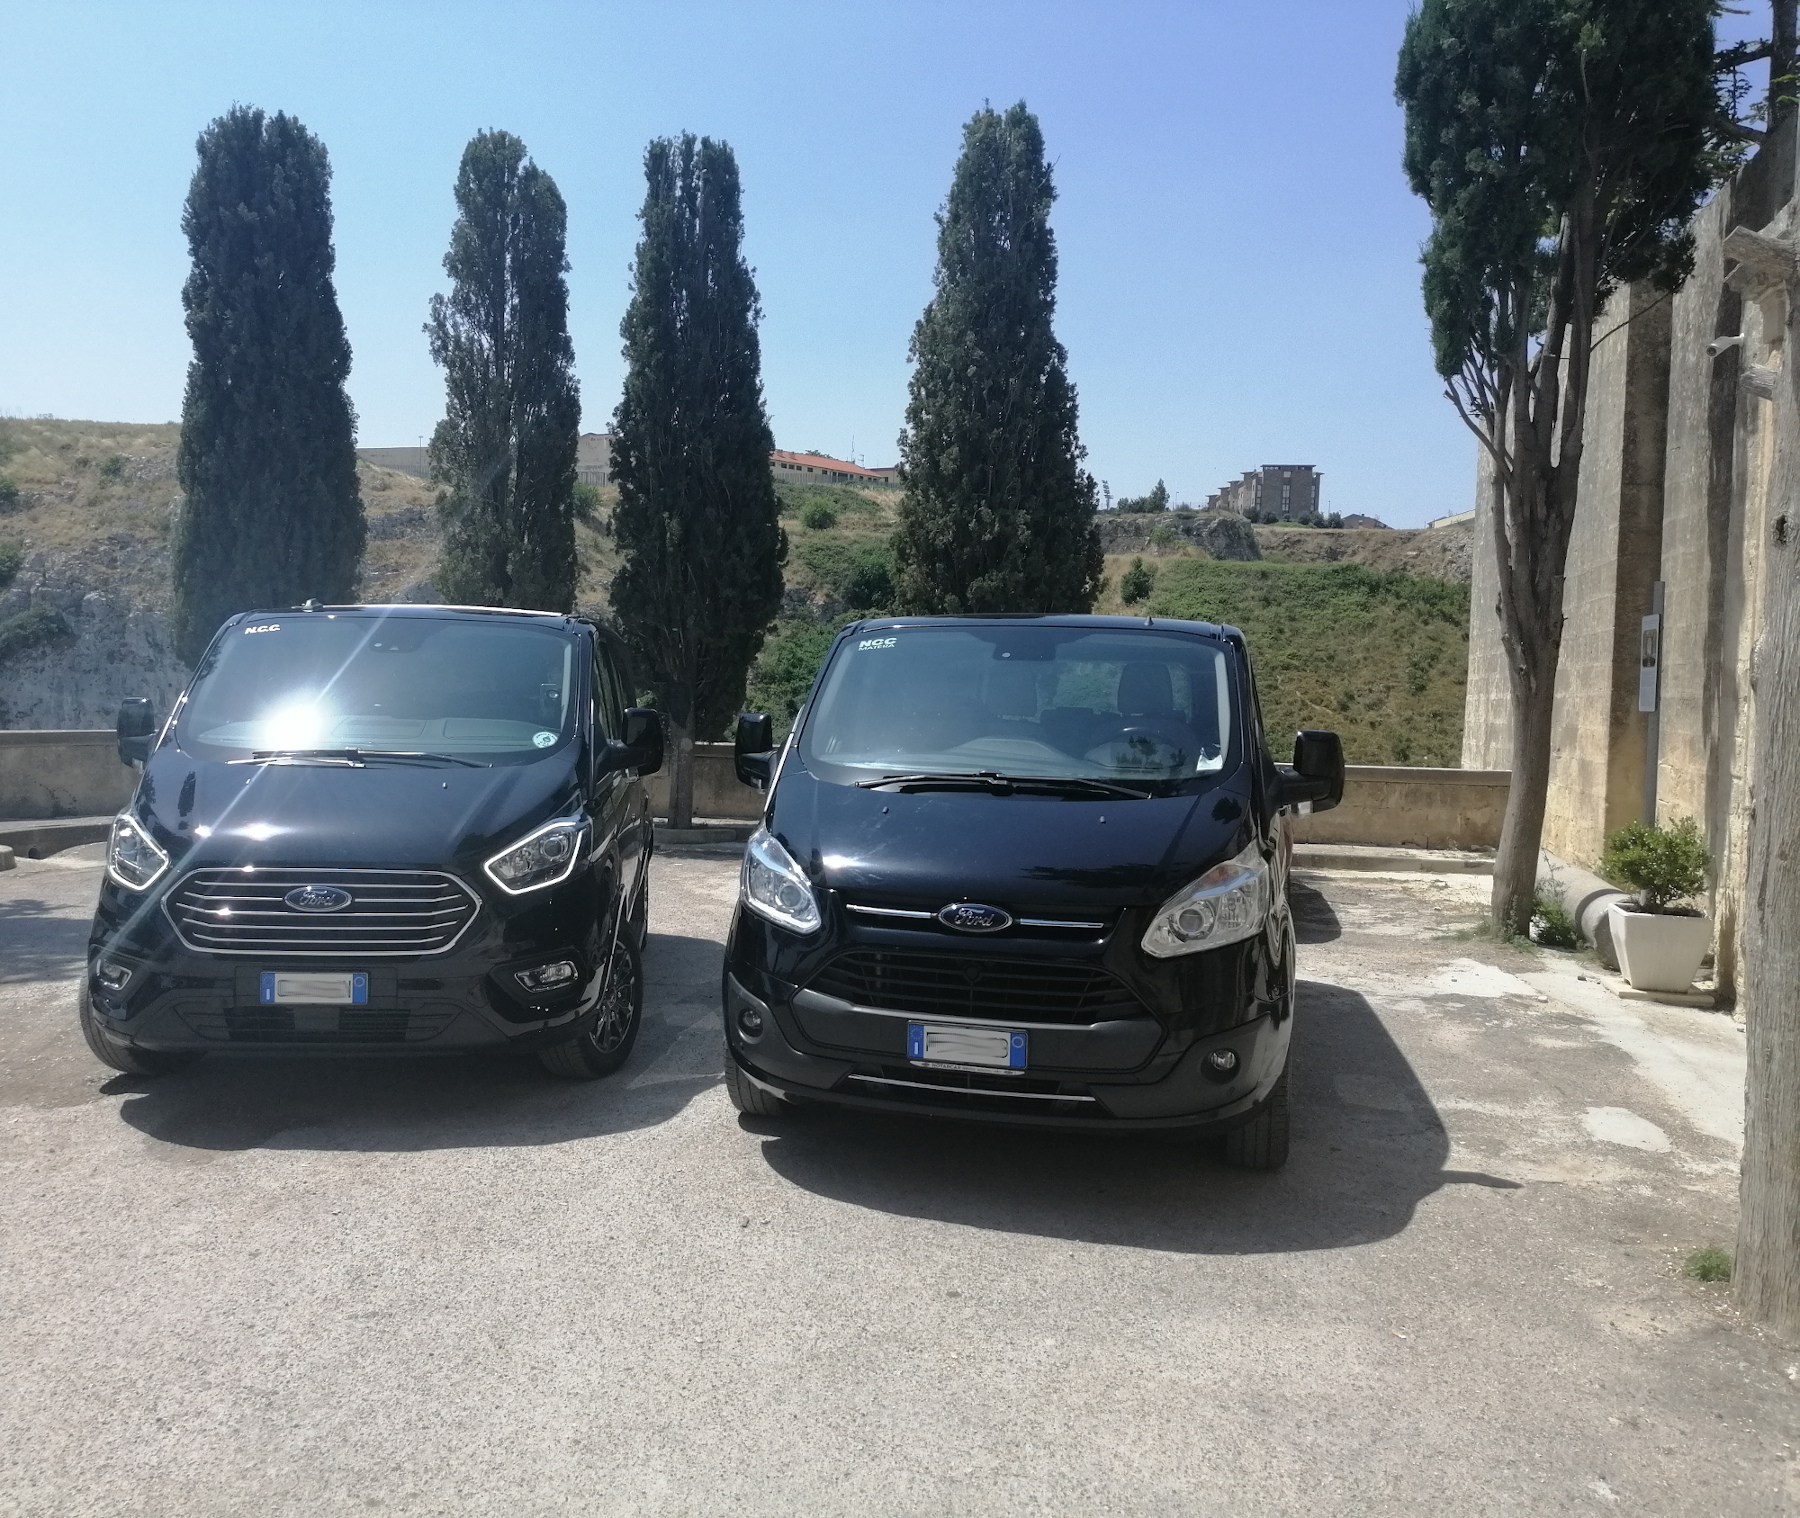 Shuttle Matera by Made in South of Italy Ford Tourneo custom i nostri mezzi servizi di noleggio con conducente